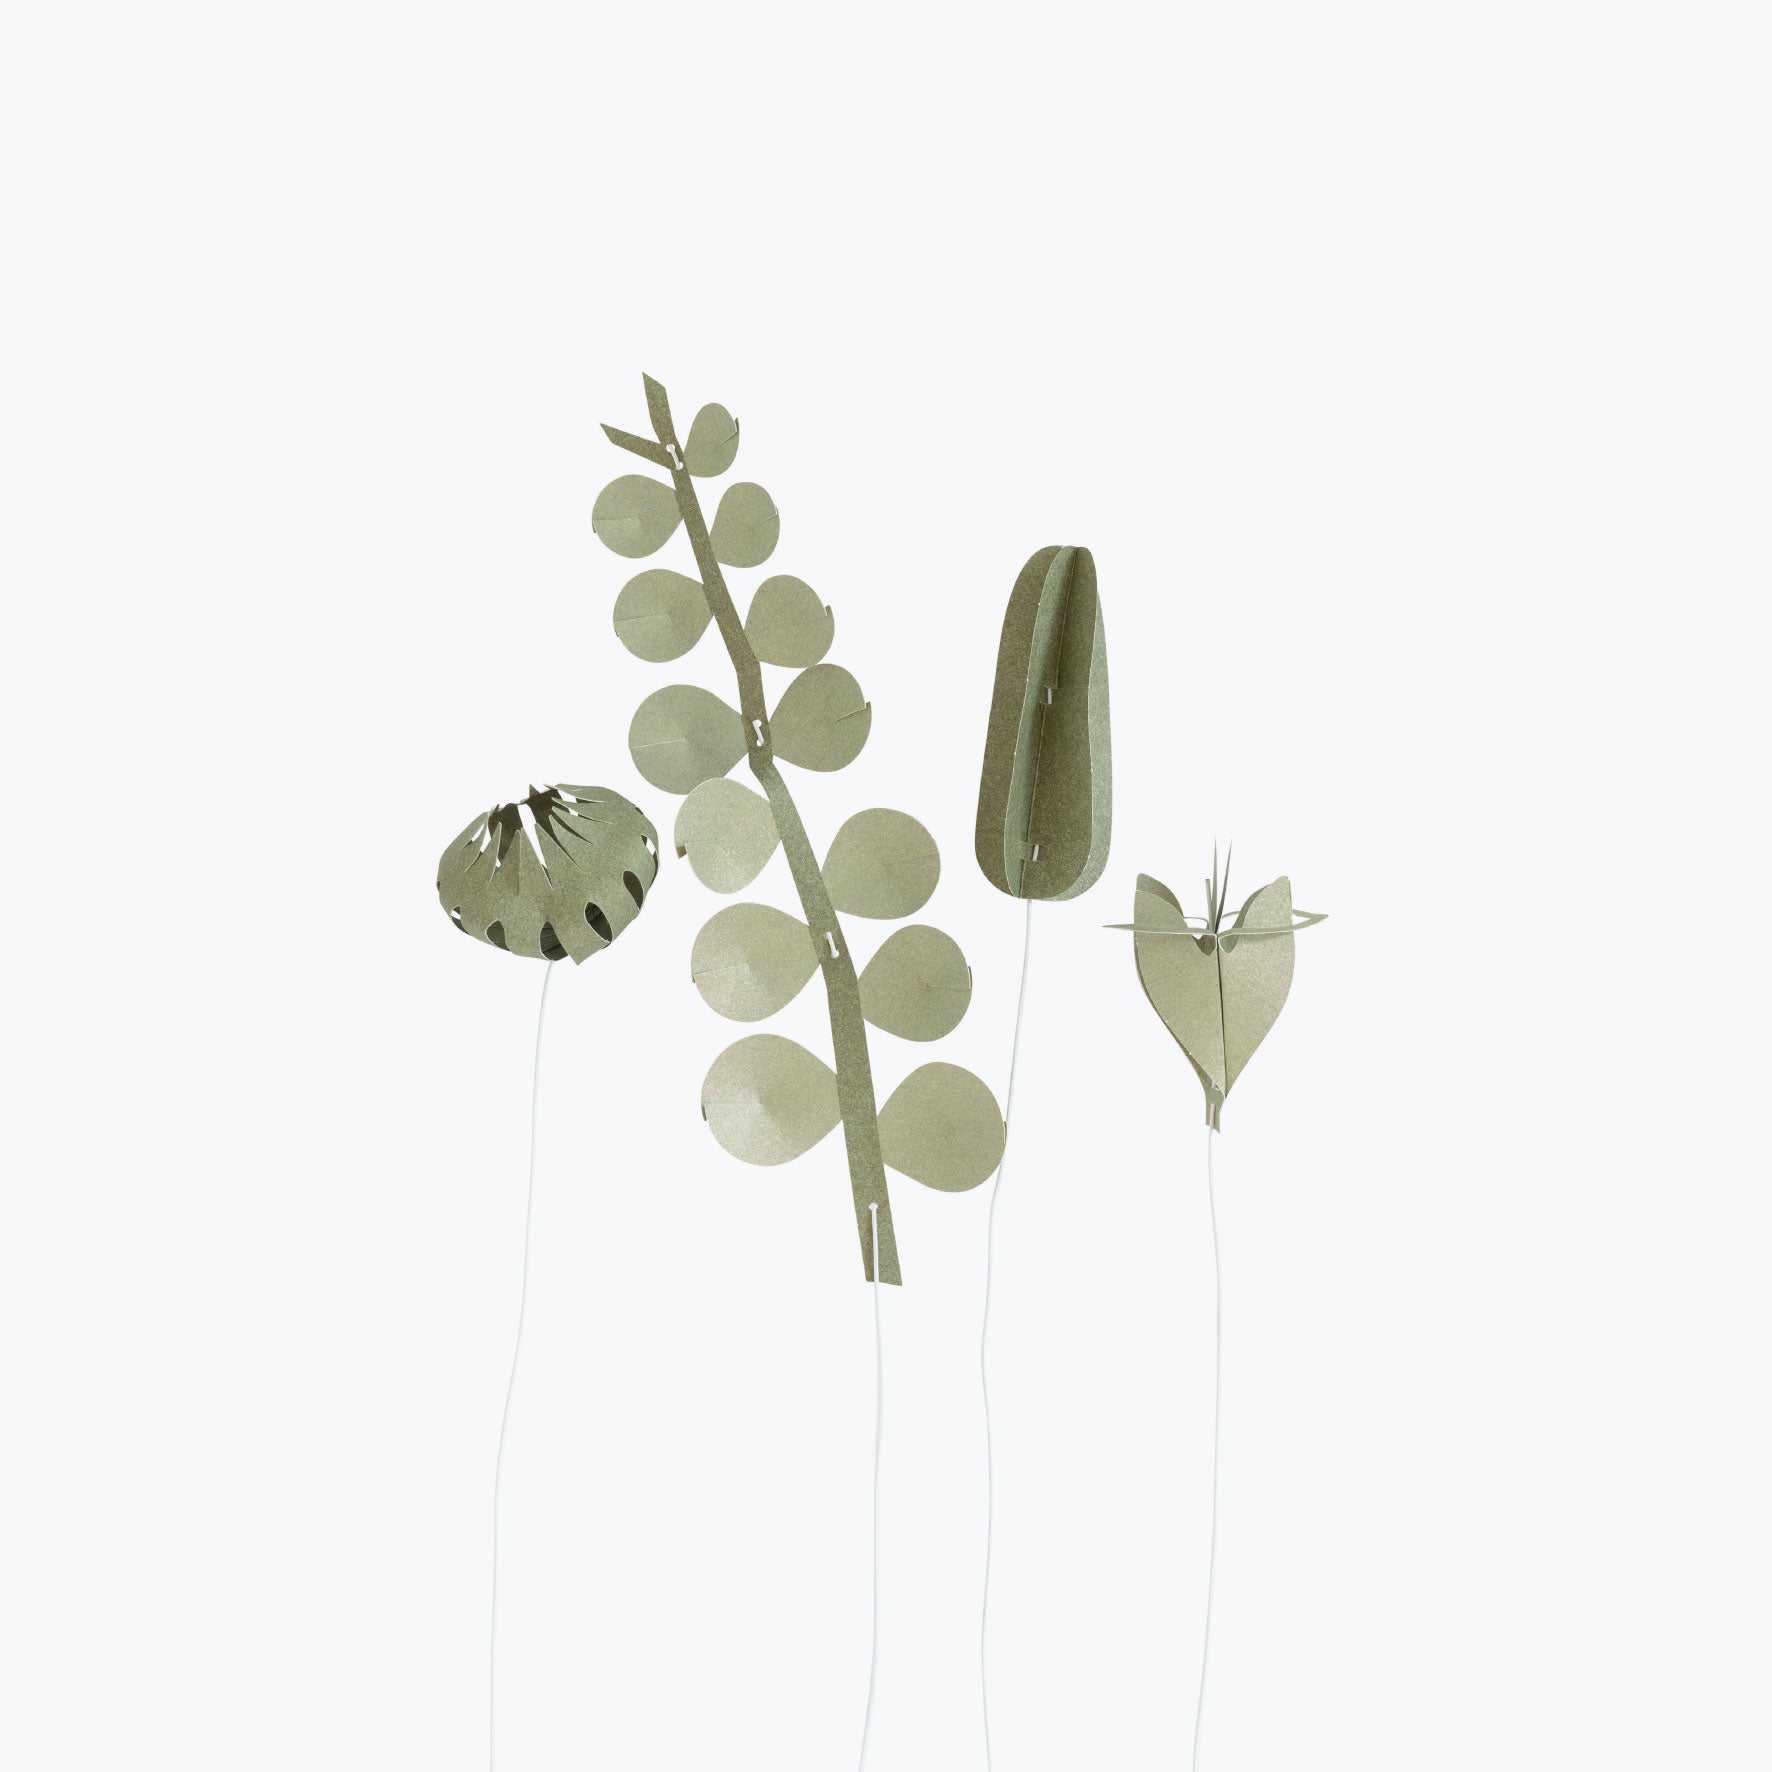 Jurianne Matter - Ornament - Flowers - Field - Small Greens